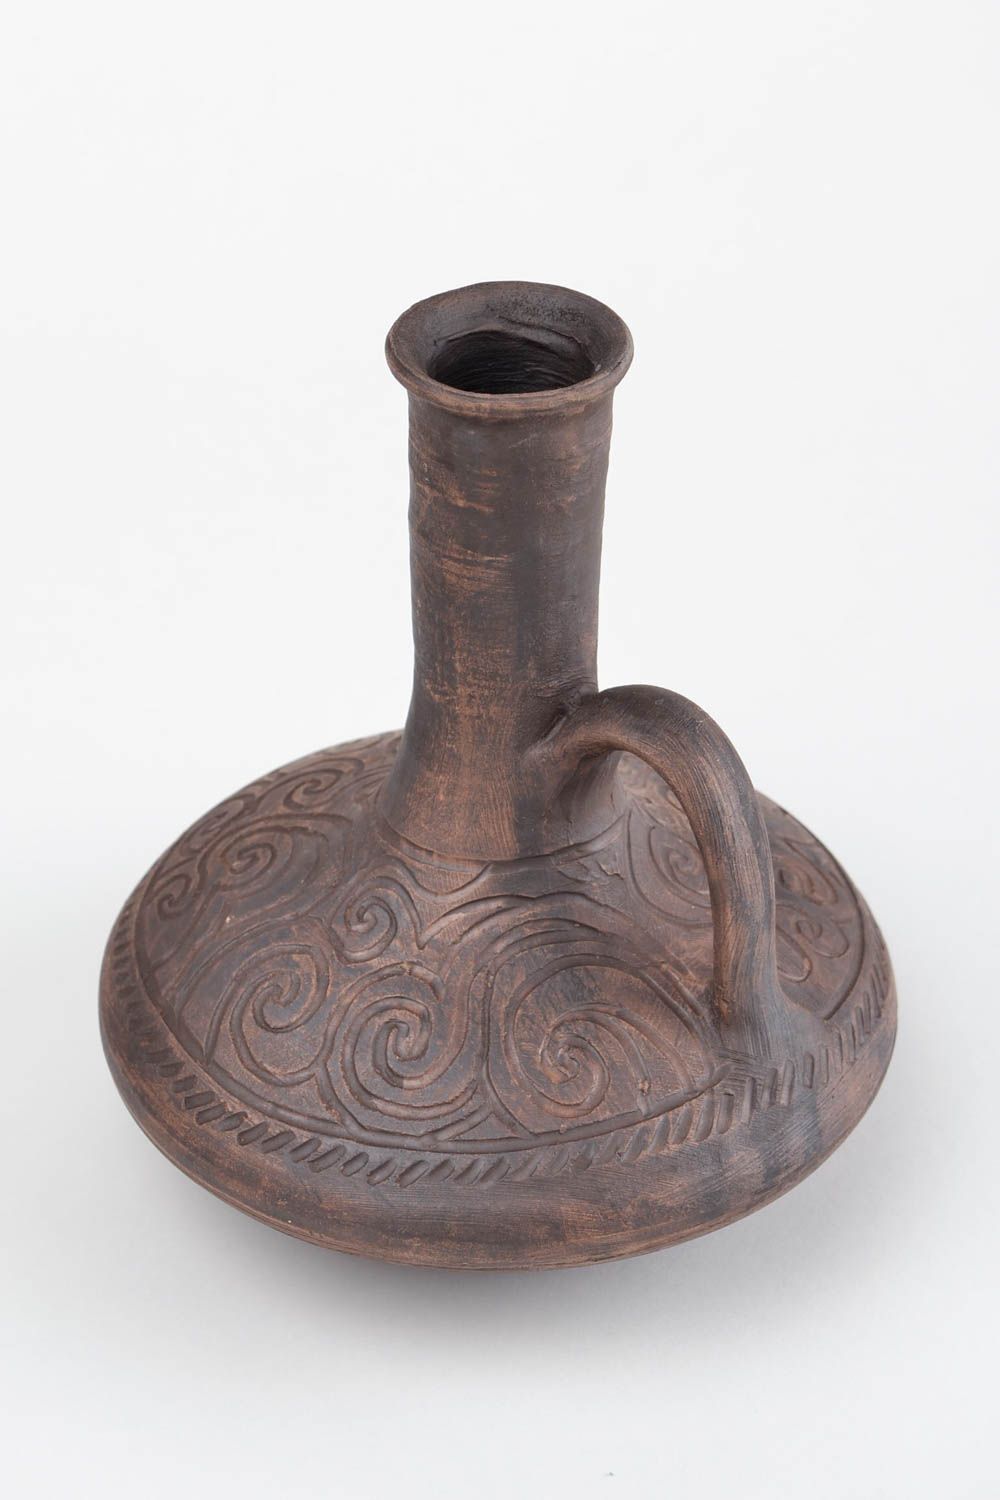 15 oz ceramic wine carafe in Arabian style 1,7 lb photo 5